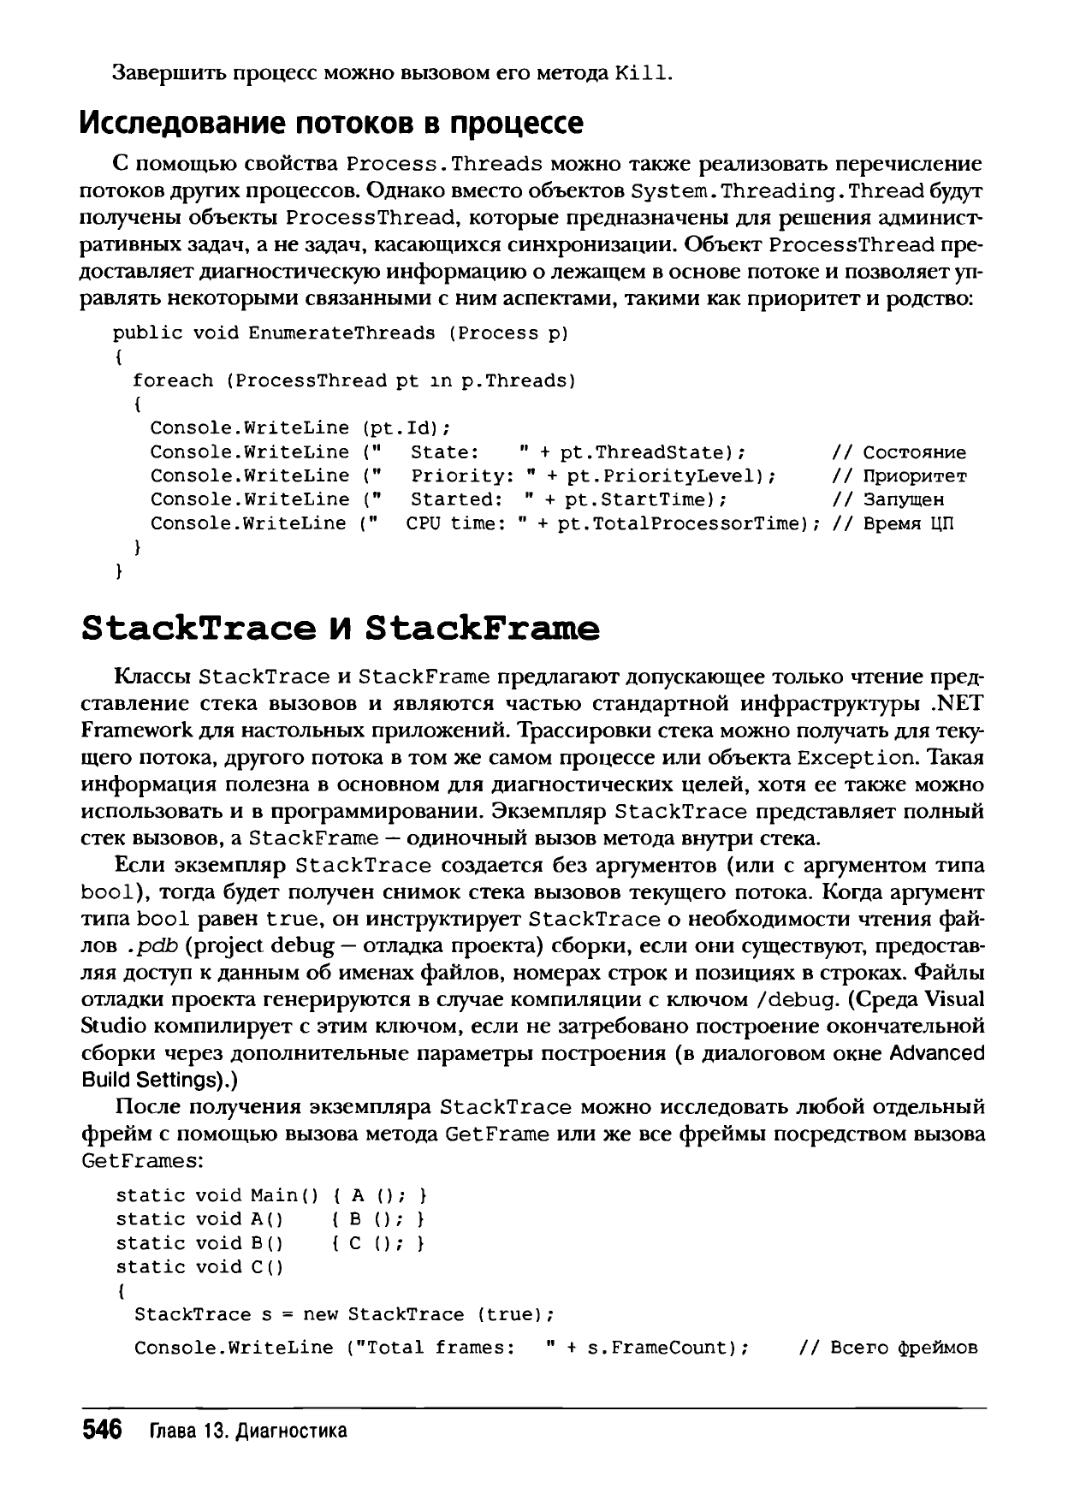 Исследование потоков в процессе
StackTrace и StackFrame